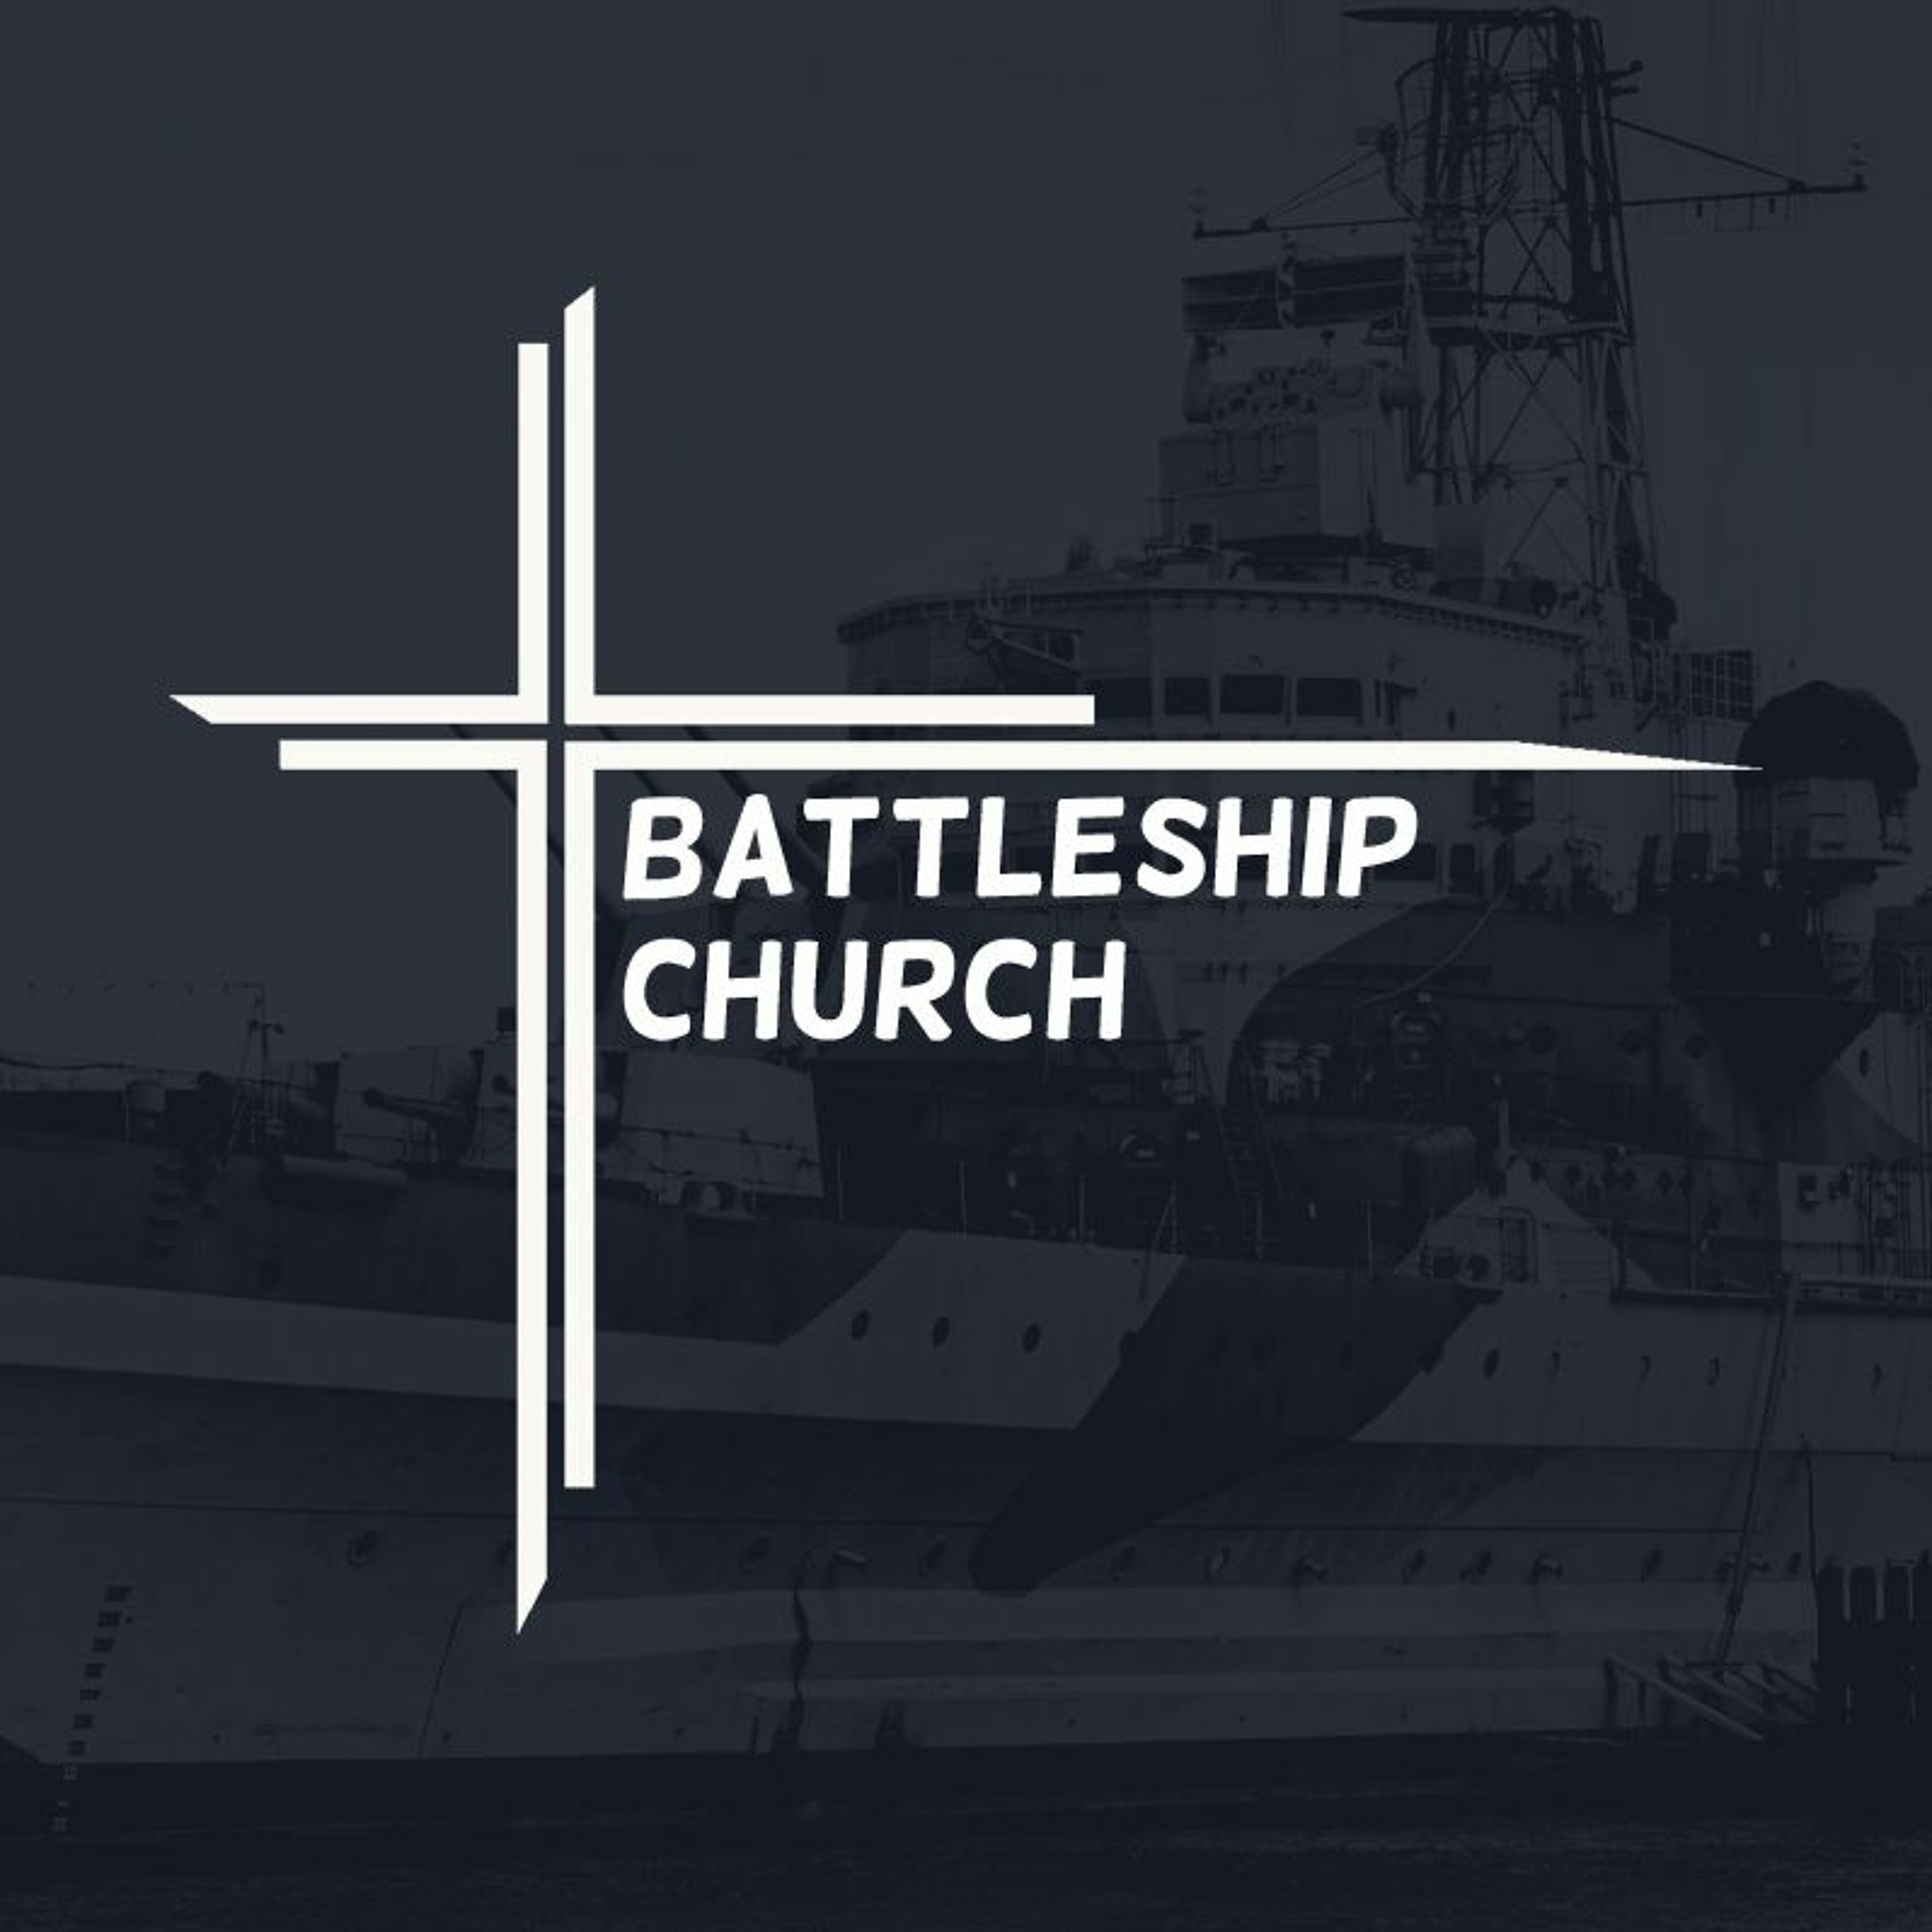 Battleship church | Leadership